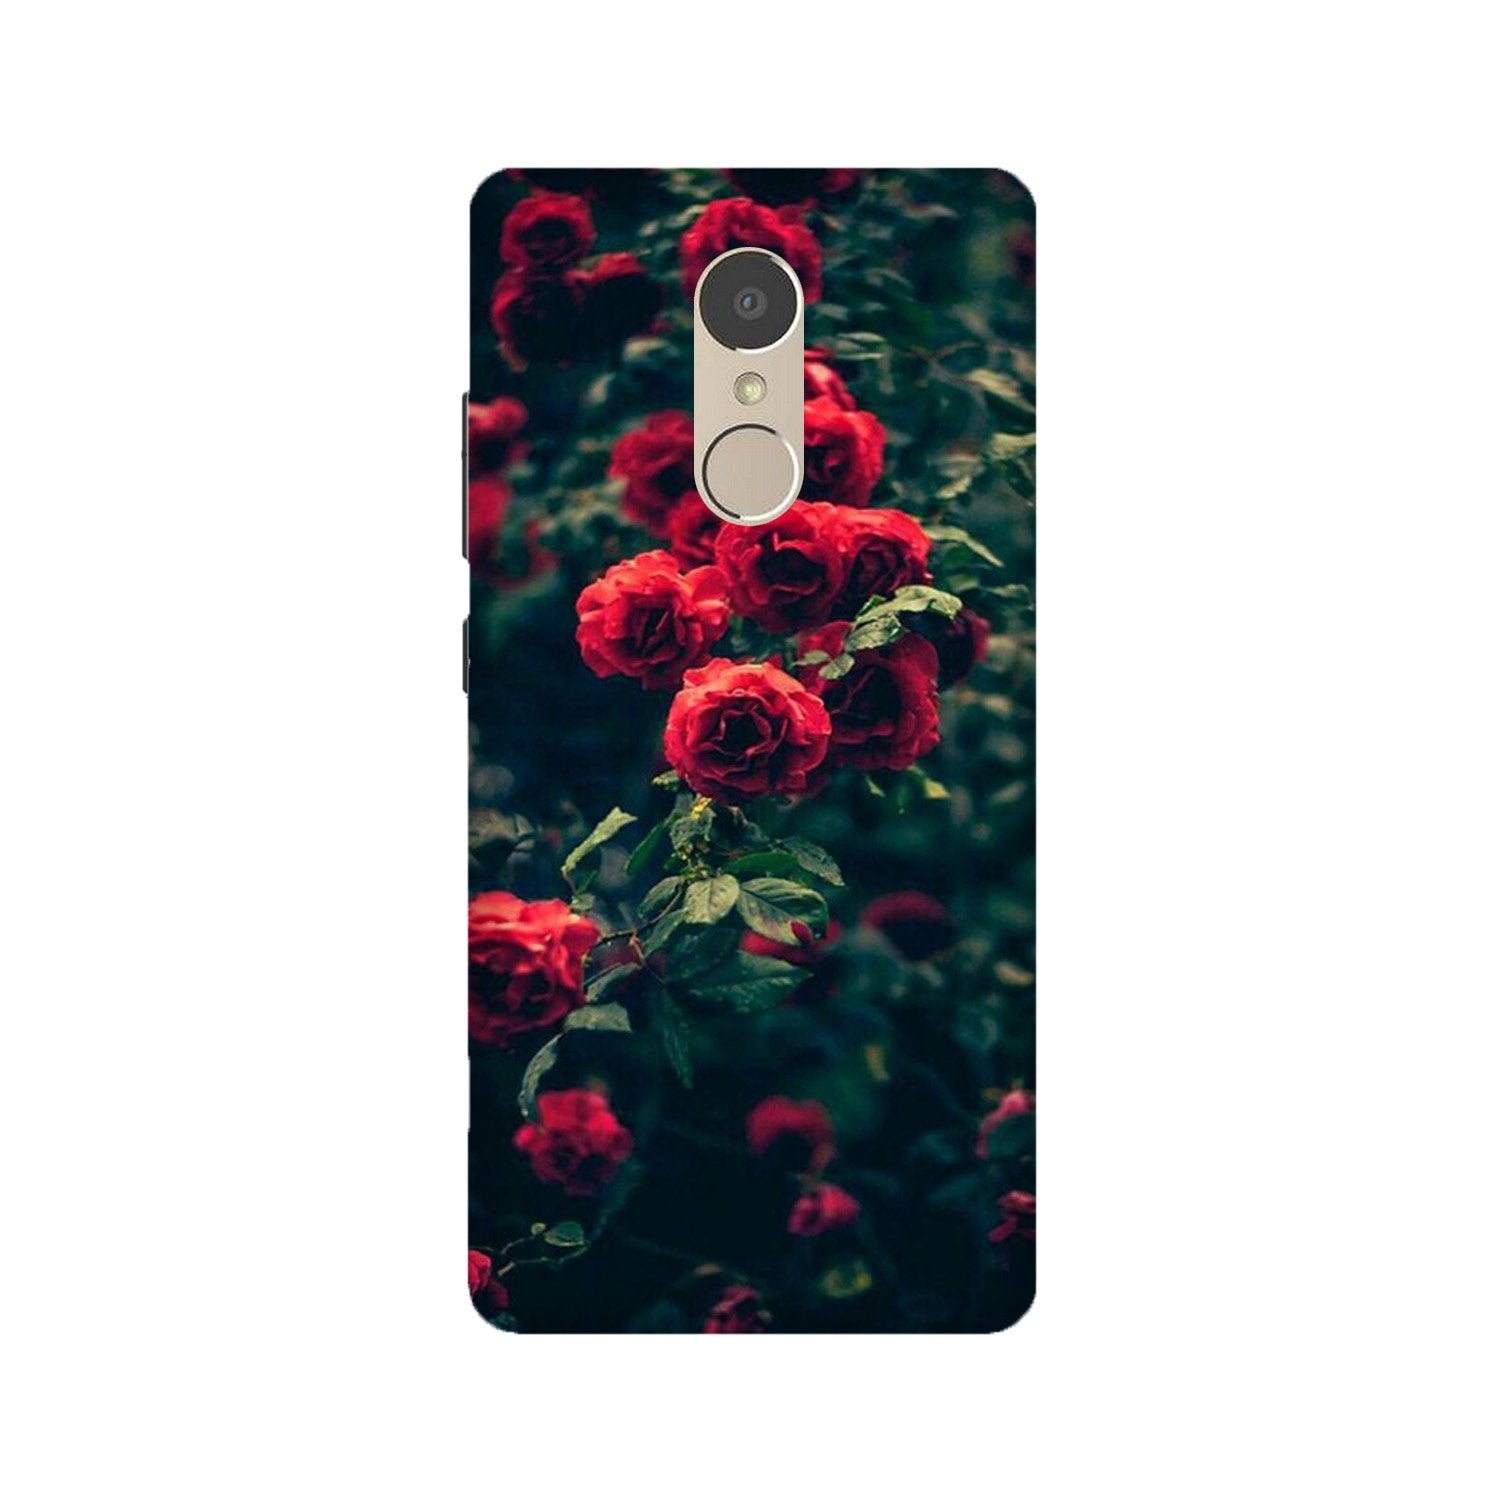 Red Rose Case for Lenovo K6 Note